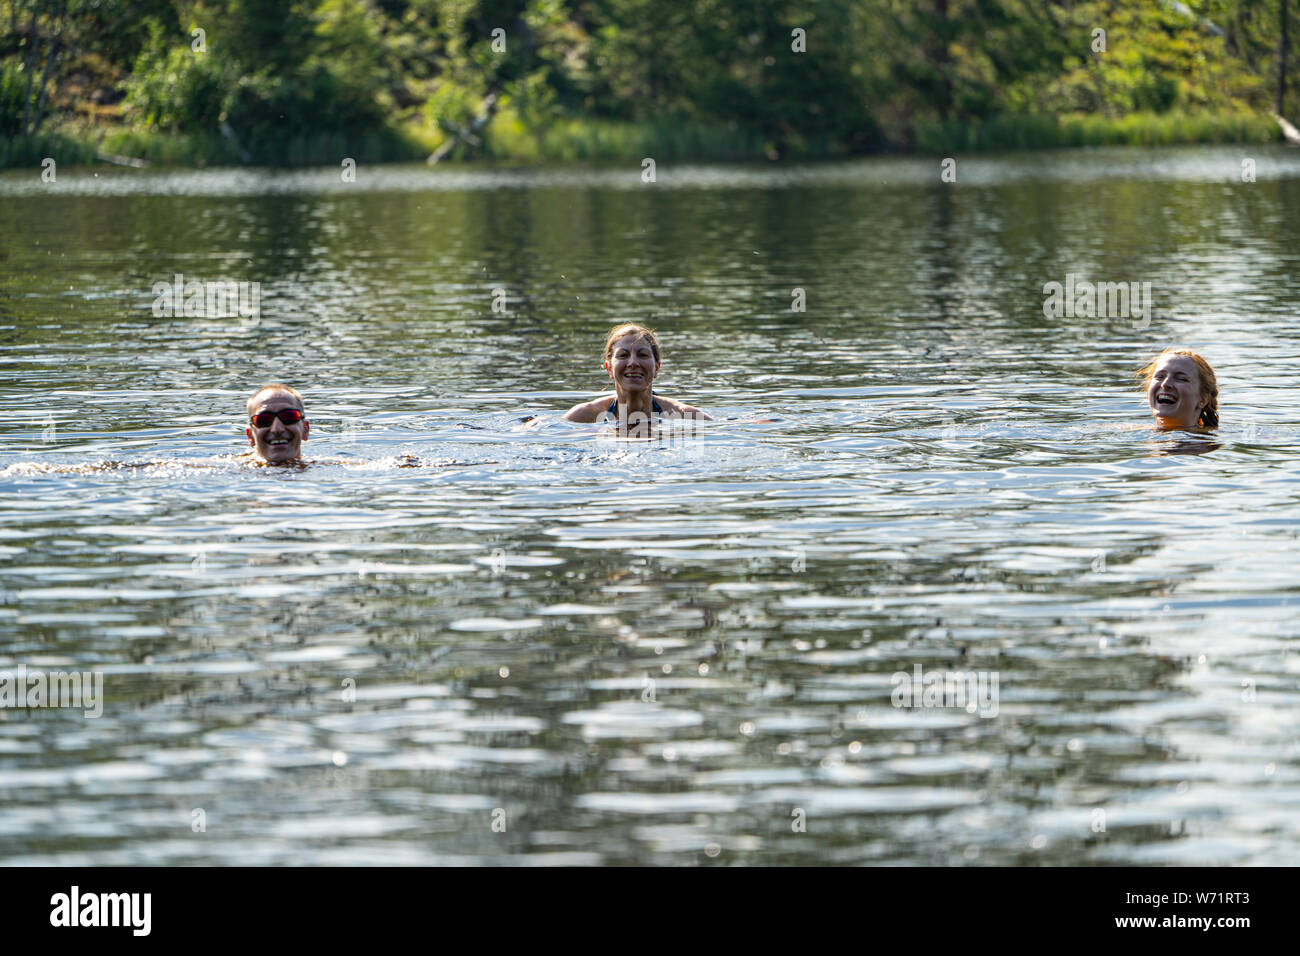 Les gens wild la natation dans la rivière Noire (Svartälven), Suède Banque D'Images